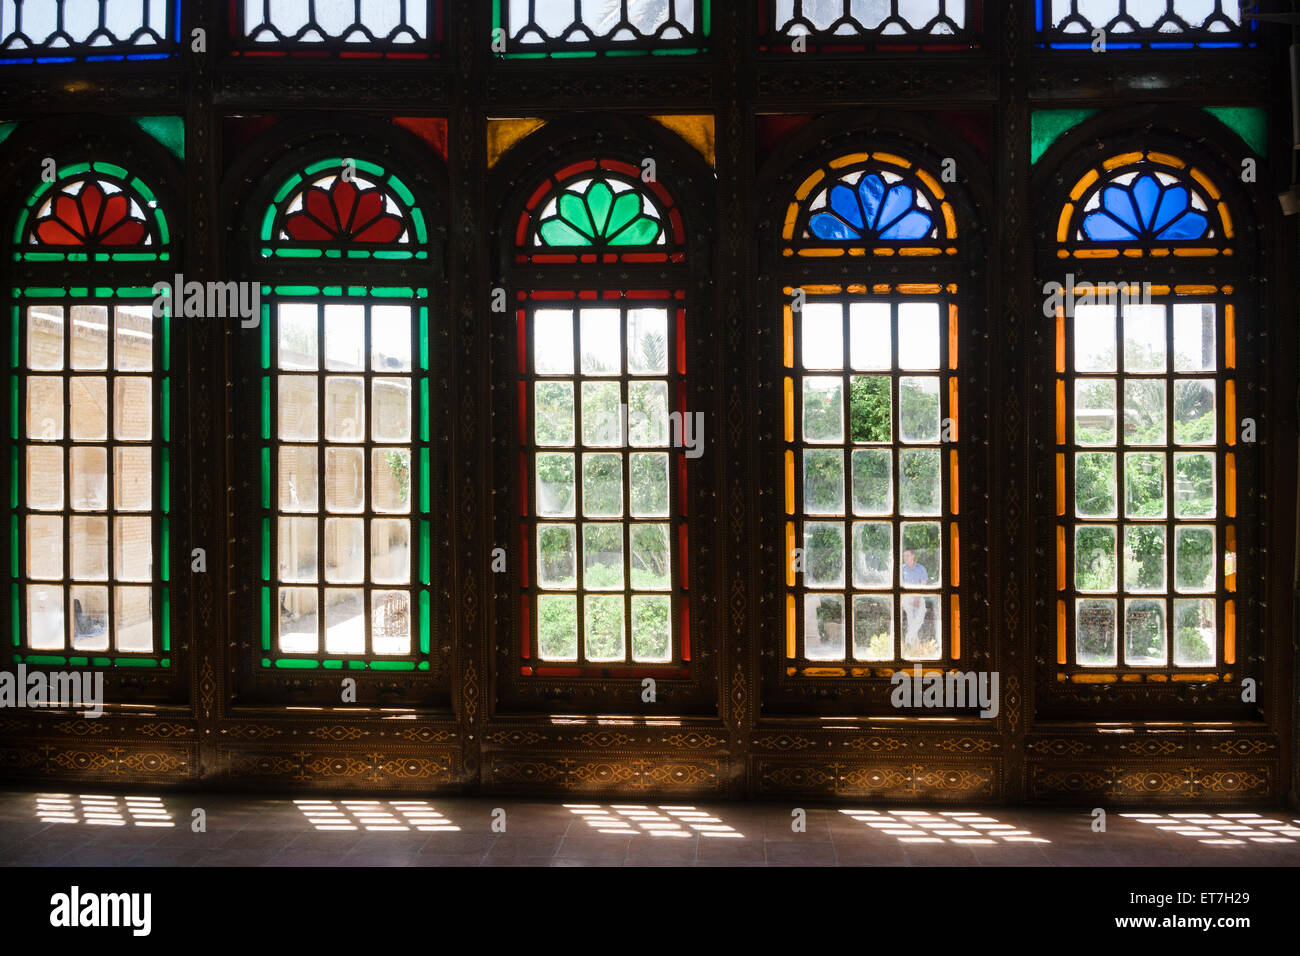 Iran, Shiraz, finestre di vetro colorato a casa Qavam nell'Bagh-e Naranjestan garden Foto Stock